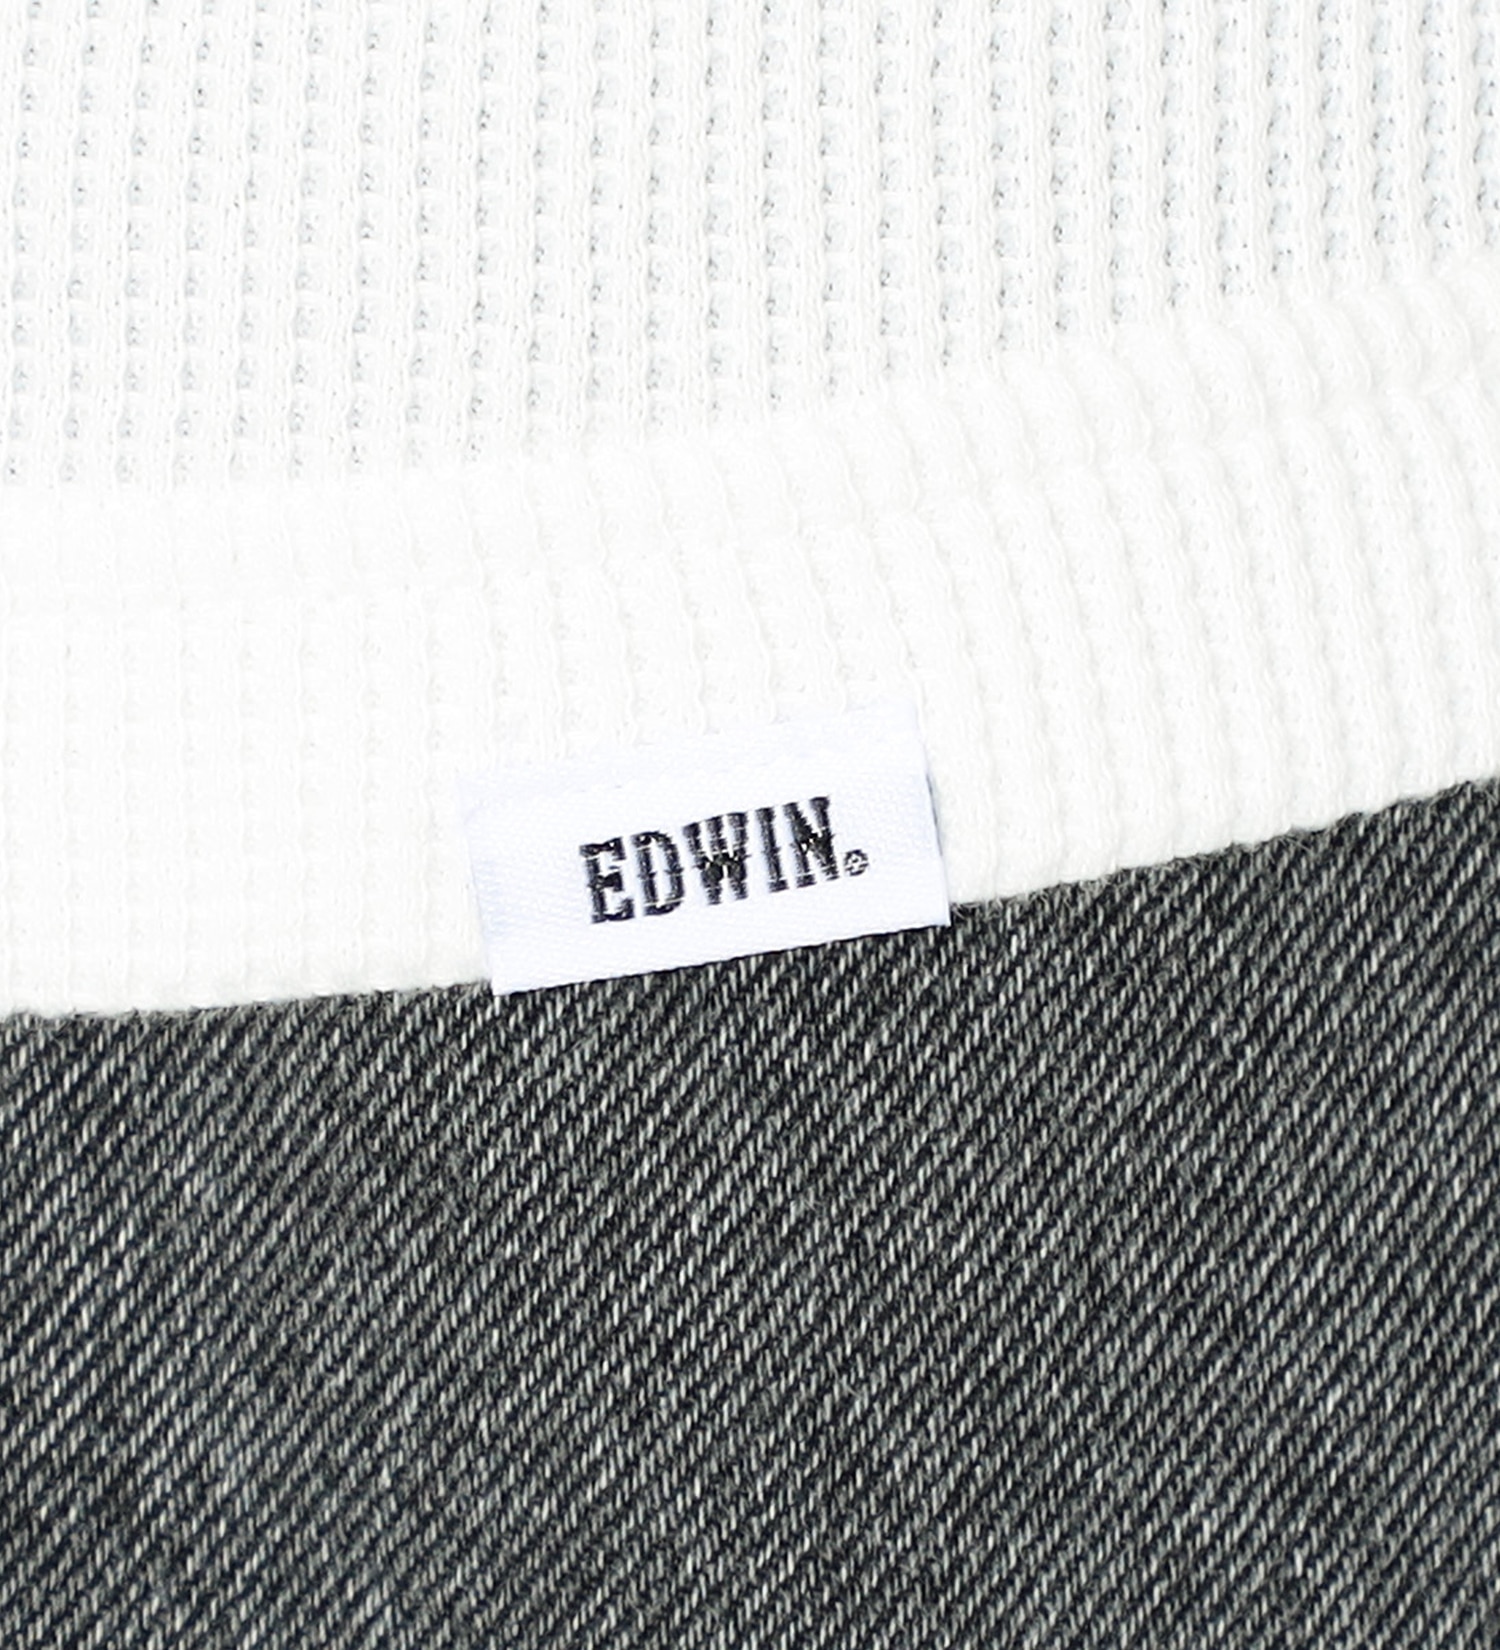 EDWIN(エドウイン)の【SALE】Vネック ワッフル Tシャツ 長袖|トップス/Tシャツ/カットソー/メンズ|ホワイト